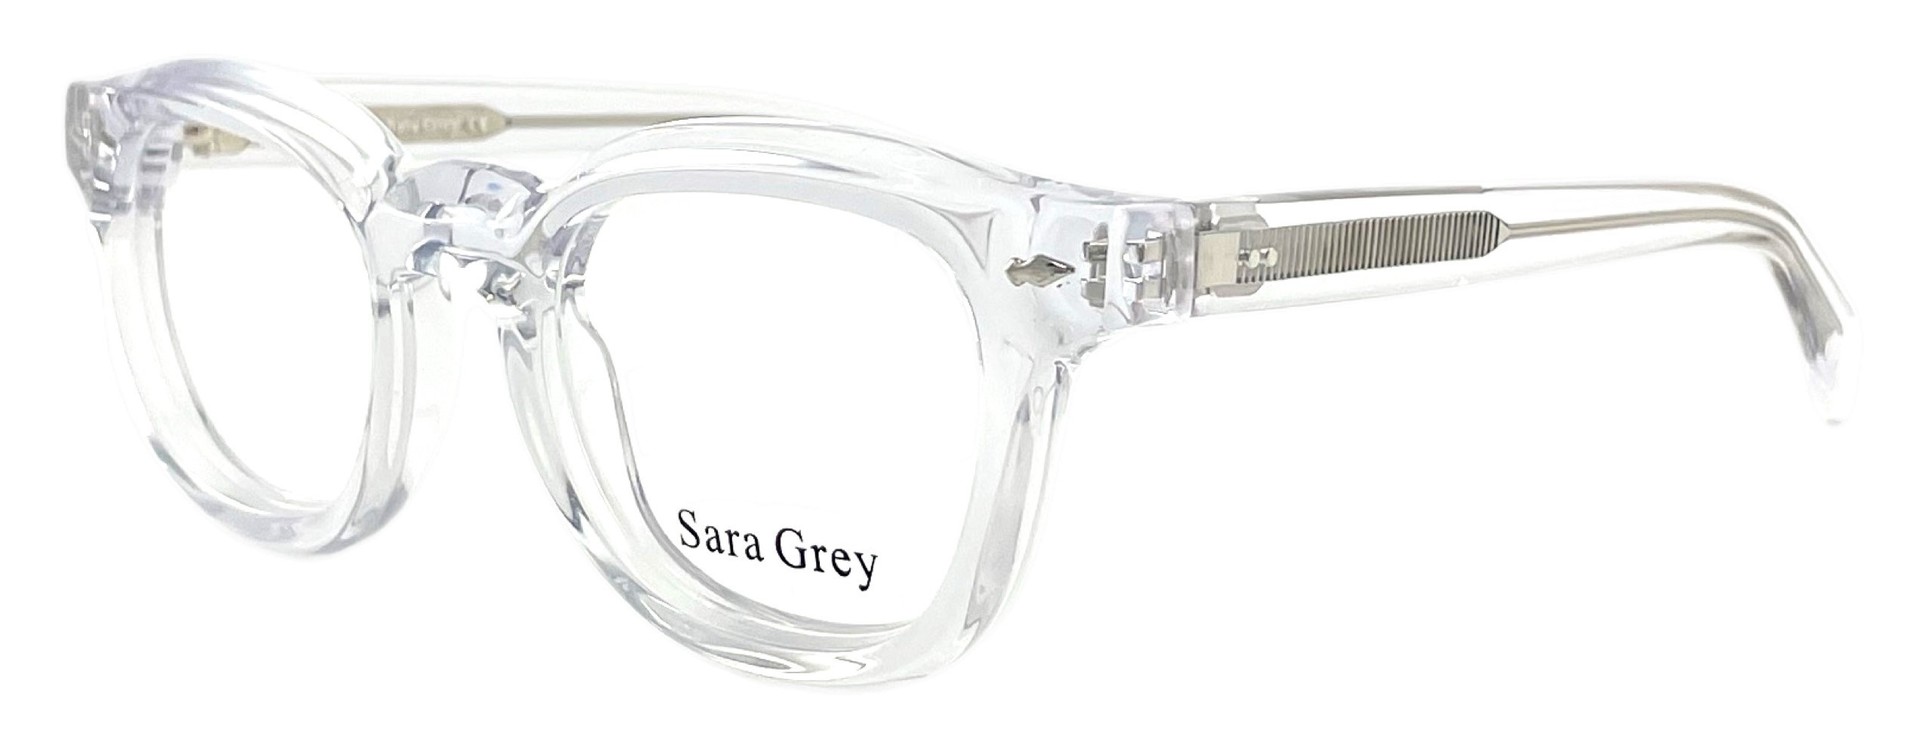 Sara Grey 2011 C04 2